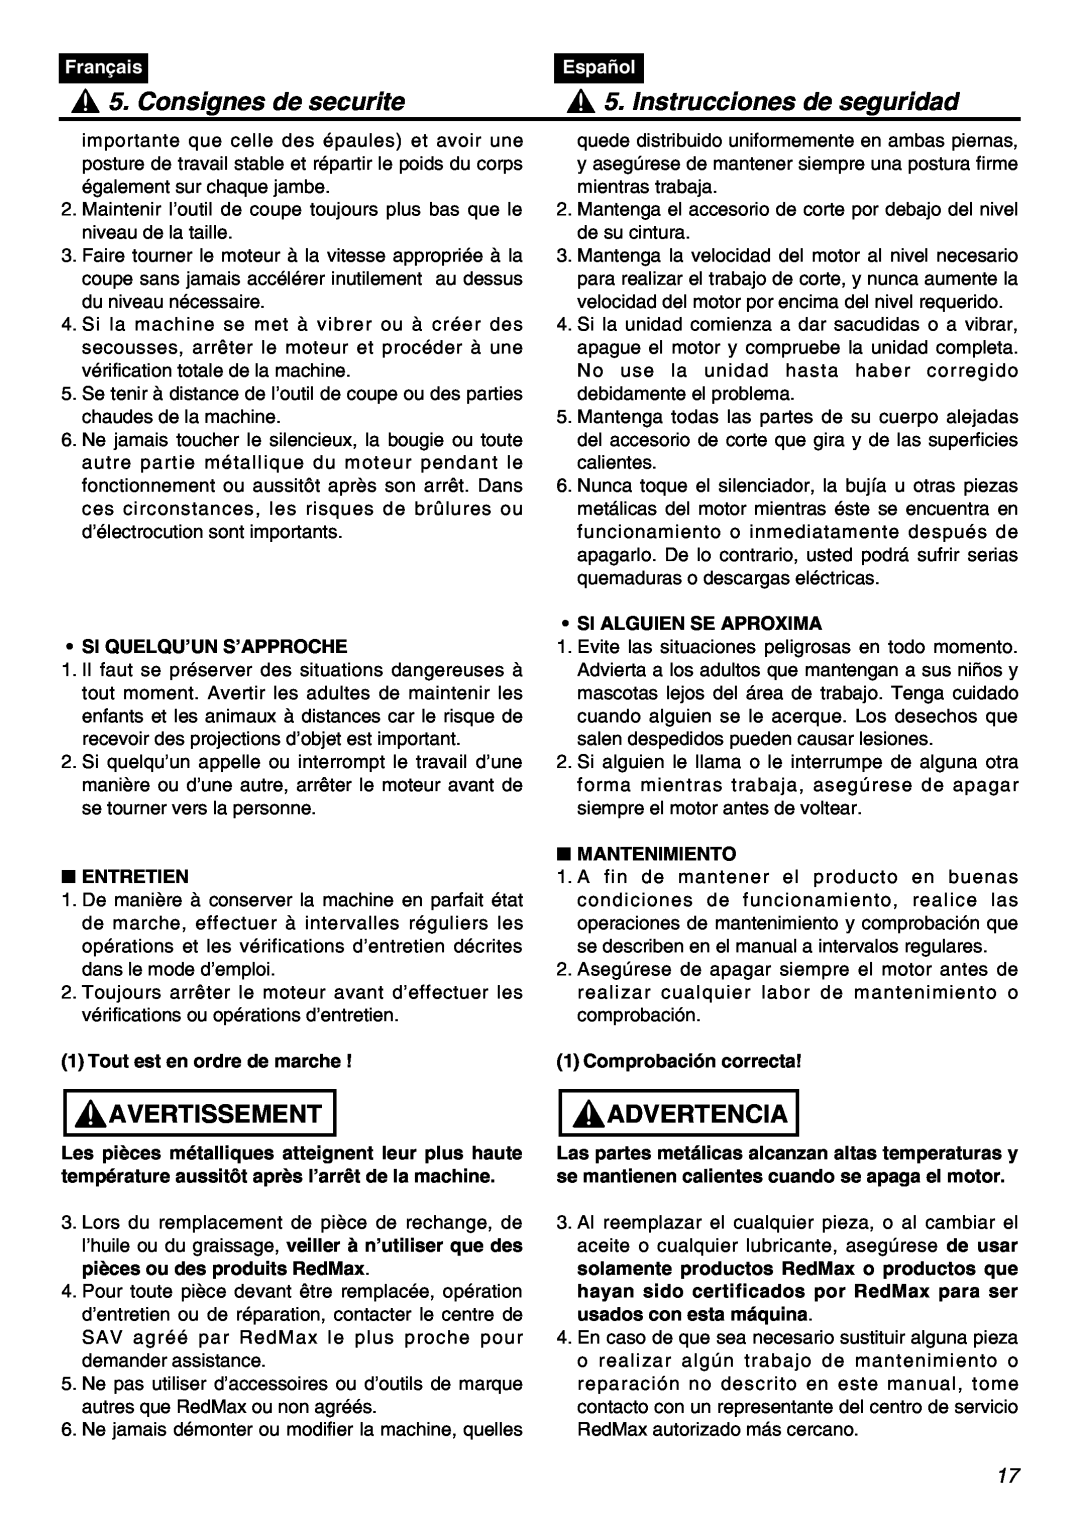 RedMax SRTZ2401F manual Consignes de securite, Instrucciones de seguridad, Avertissement, Advertencia, Français, Español 